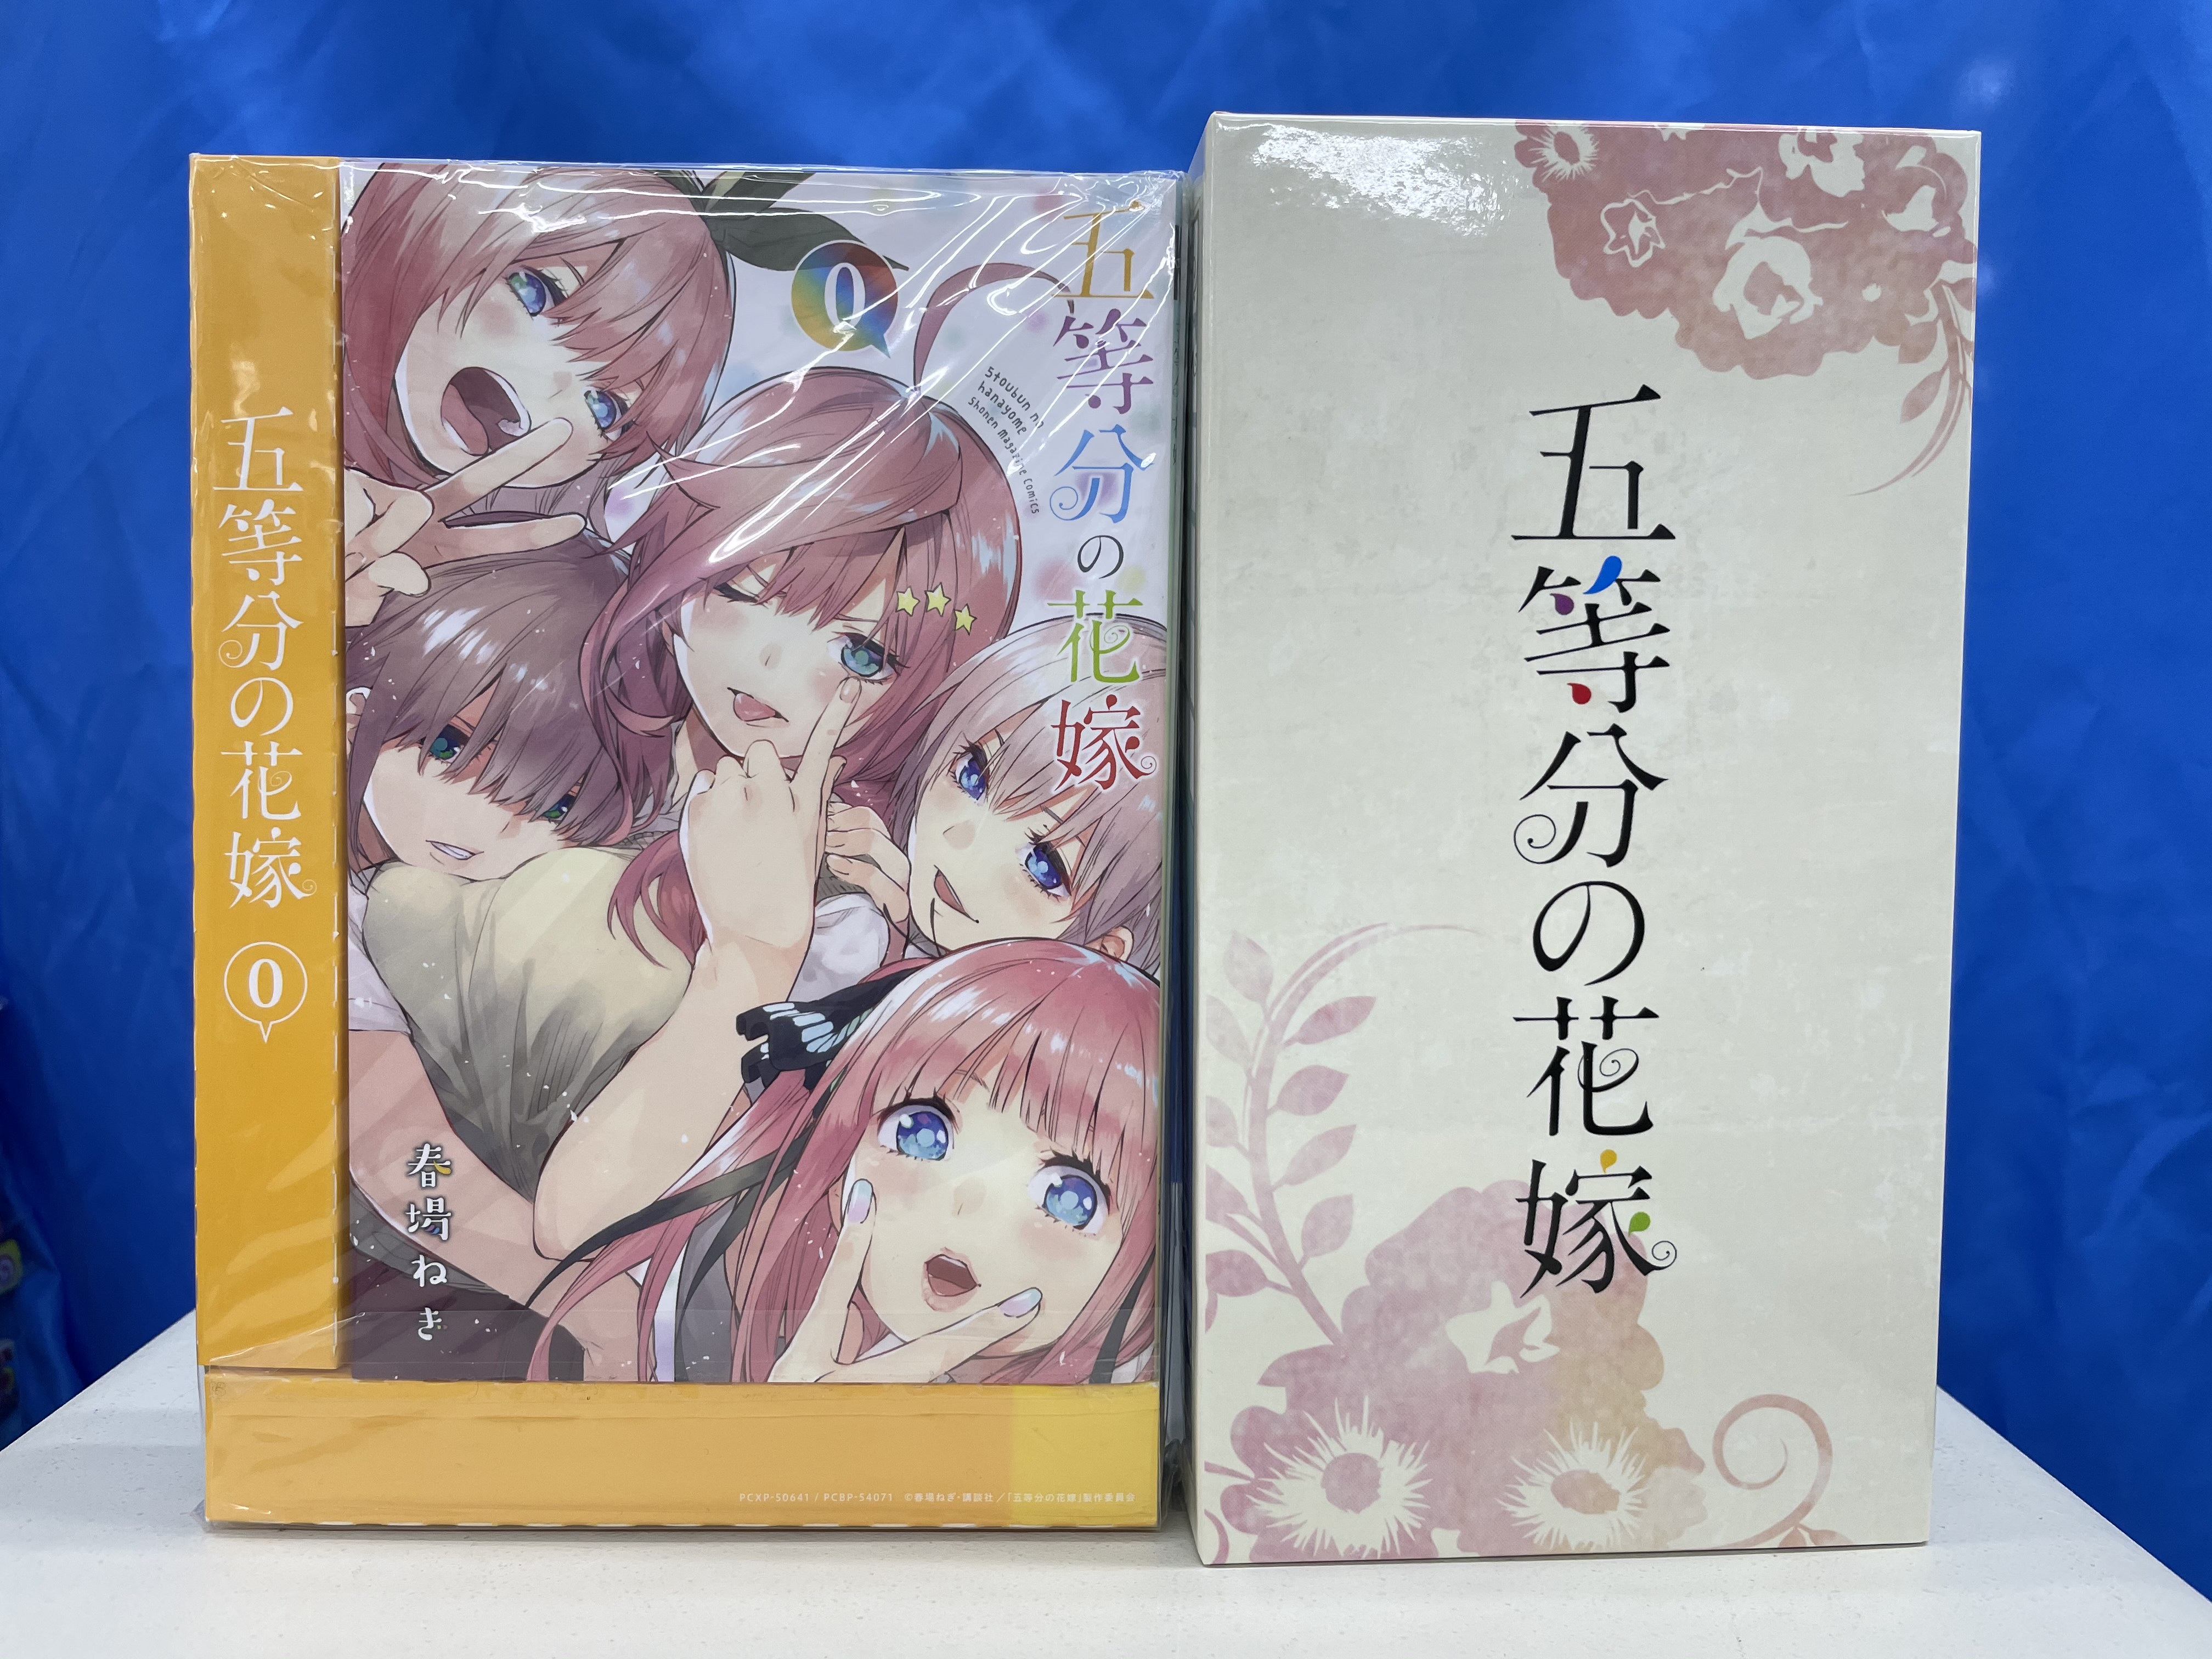 買取情報『五等分の花嫁の初回限定版5巻セット ゲーマーズ全巻収納BOX